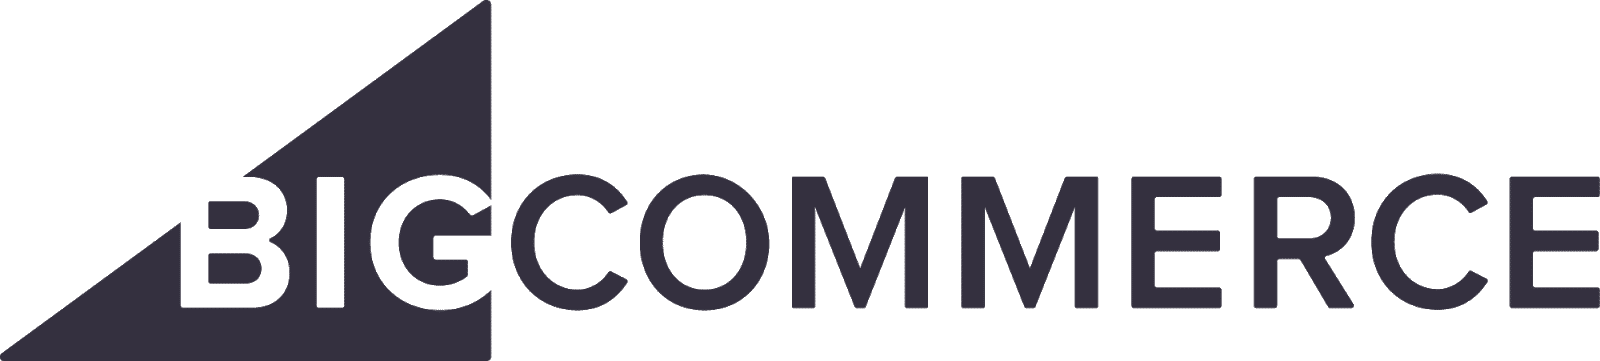 ecommerce platforms: BigCommerce